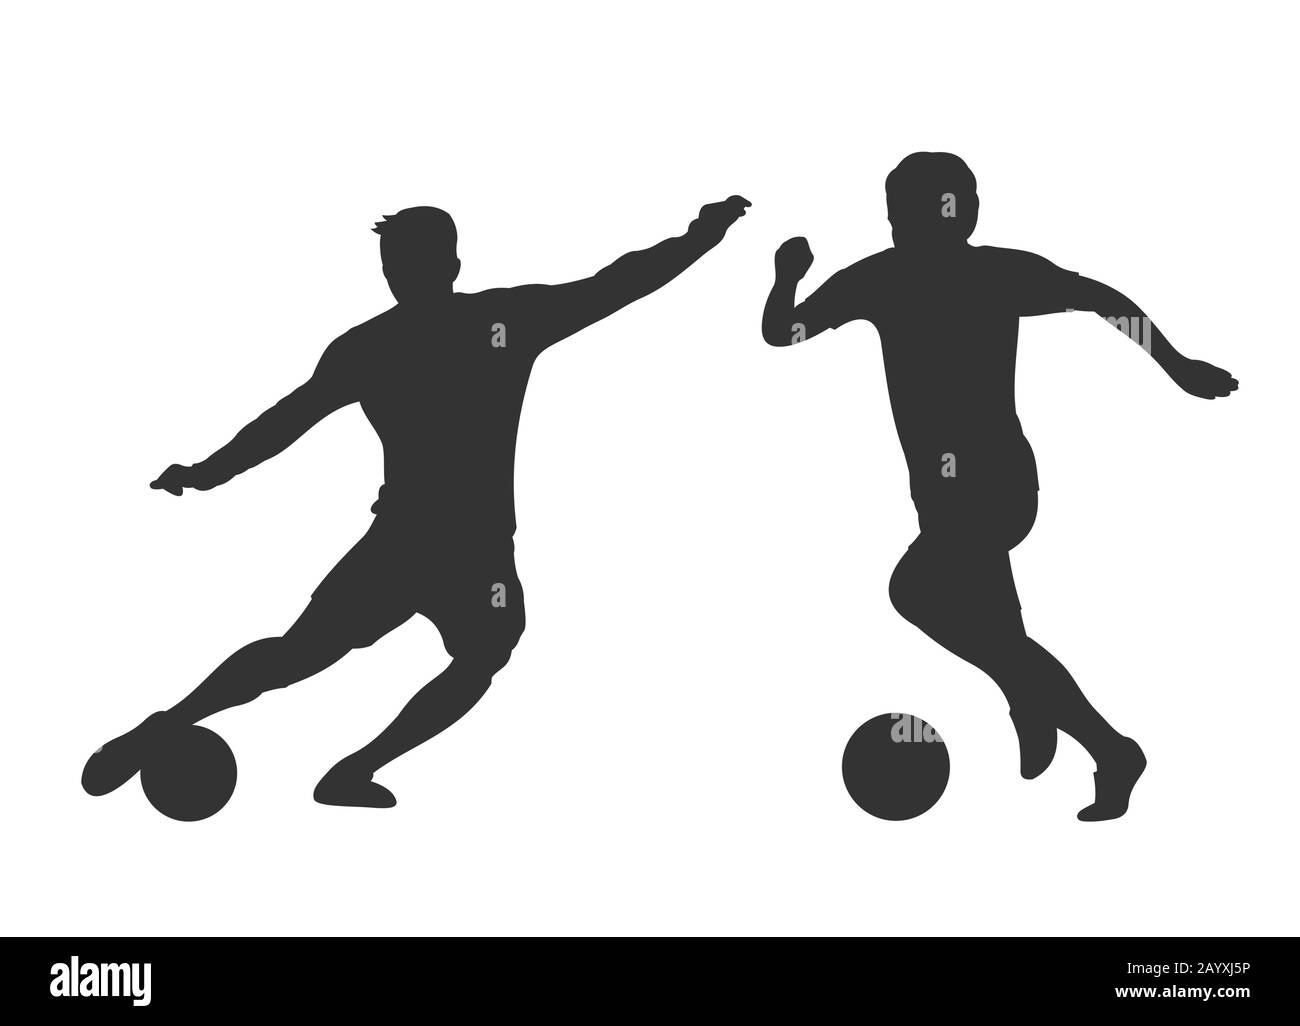 Silhouetten der Fußballspieler isoliert über Weiß. Aktivitätsmann spielt auf Fußball. Vektorgrafiken Stock Vektor